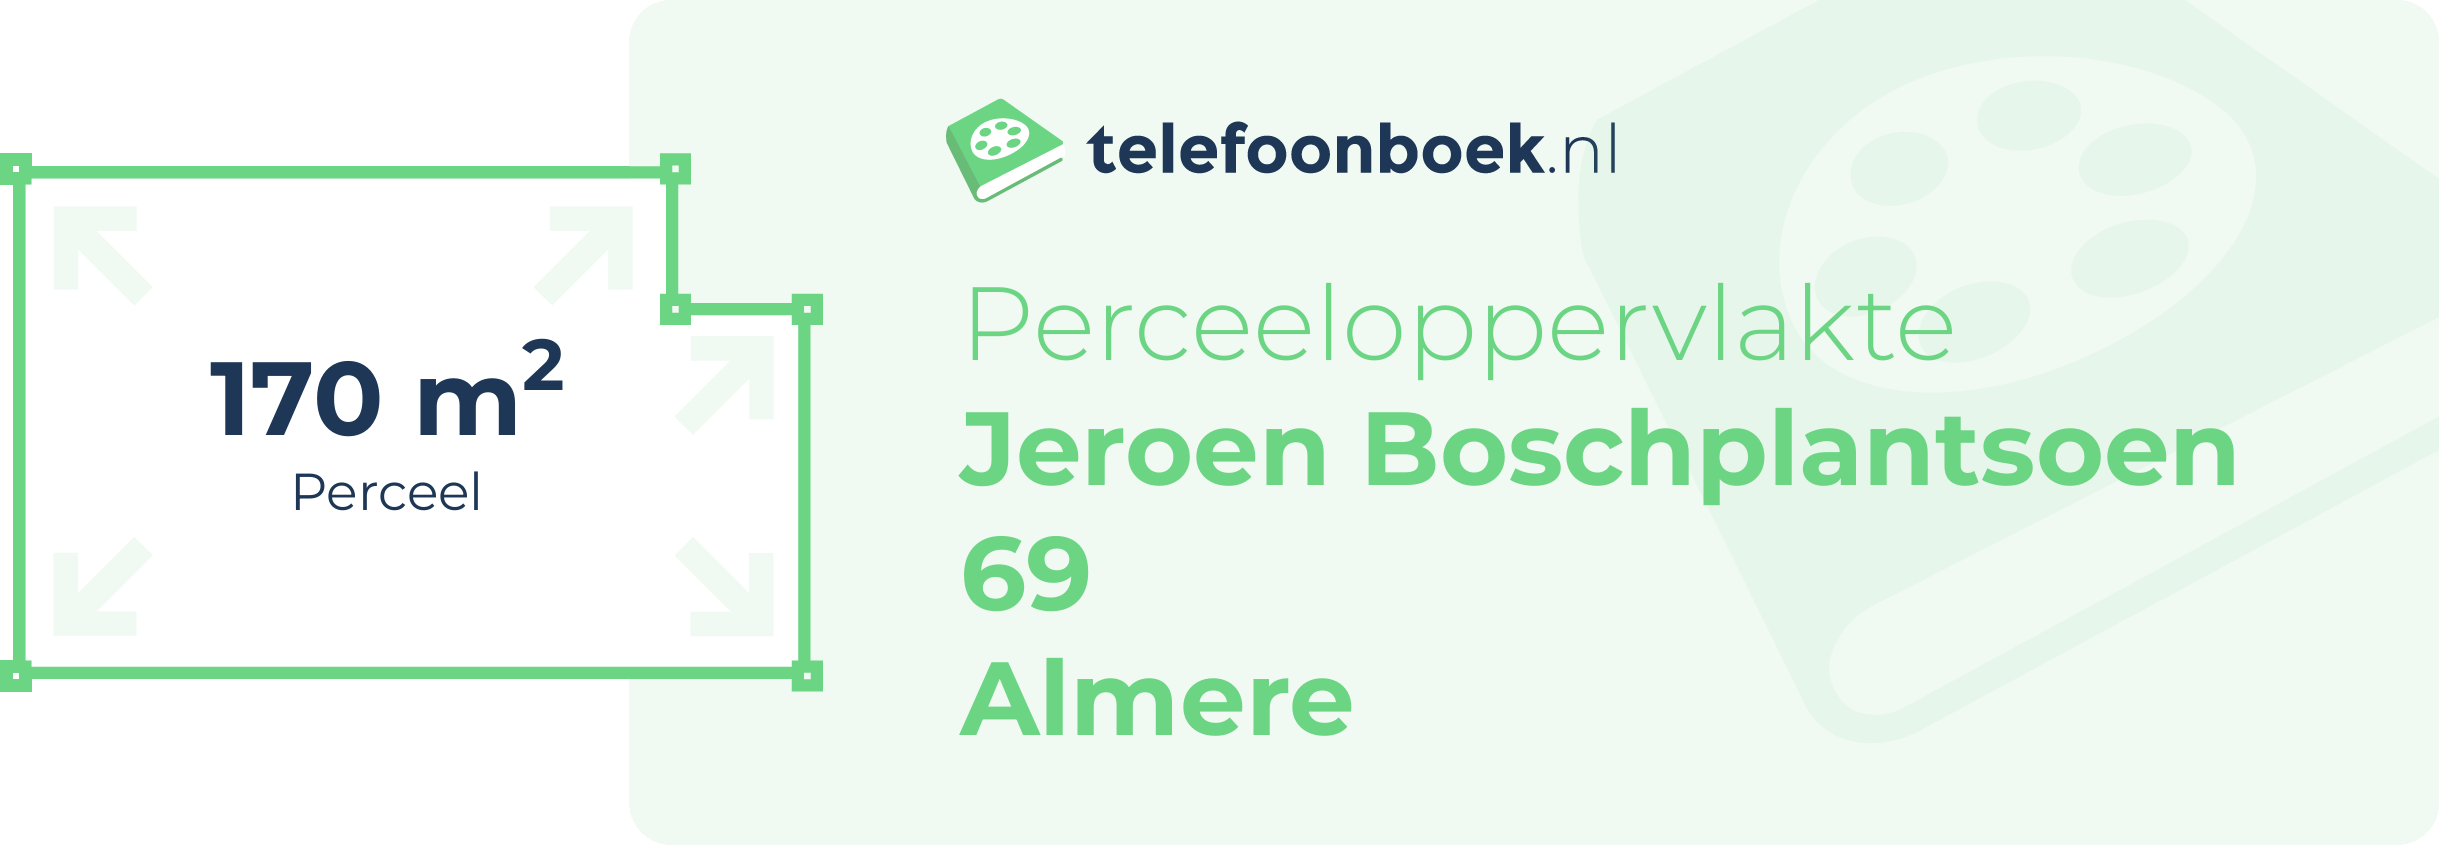 Perceeloppervlakte Jeroen Boschplantsoen 69 Almere